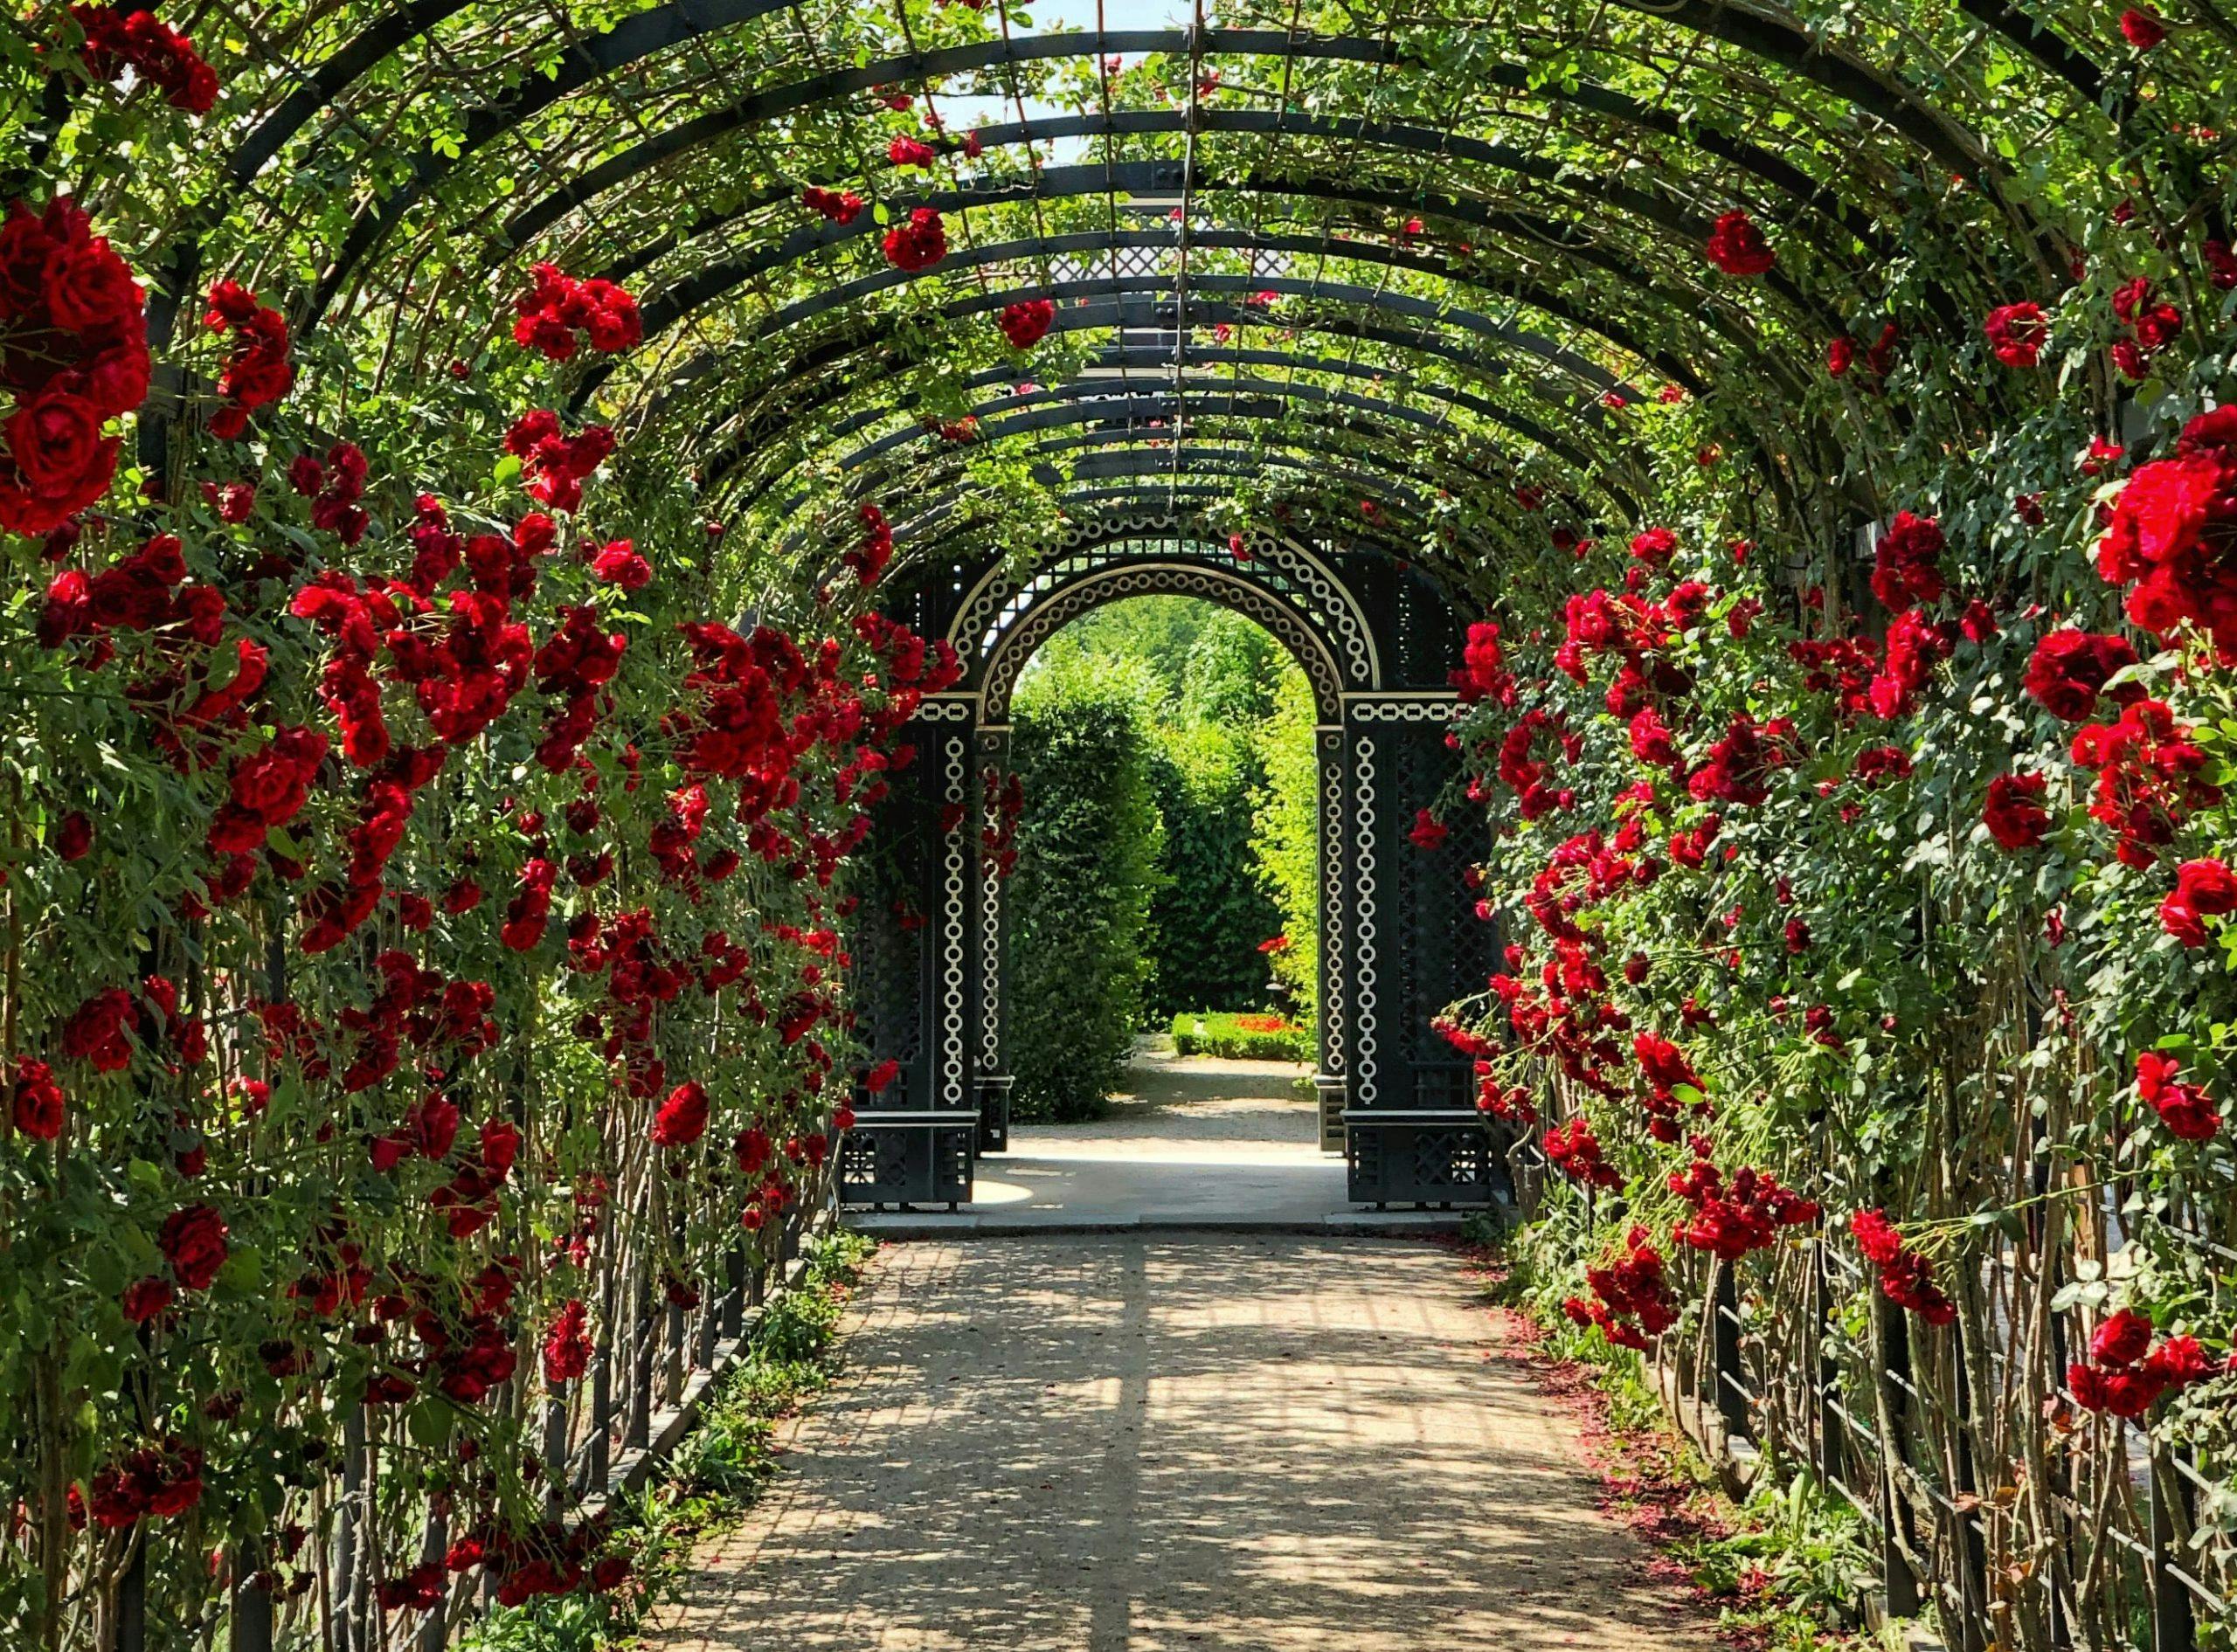 Roses in a garden